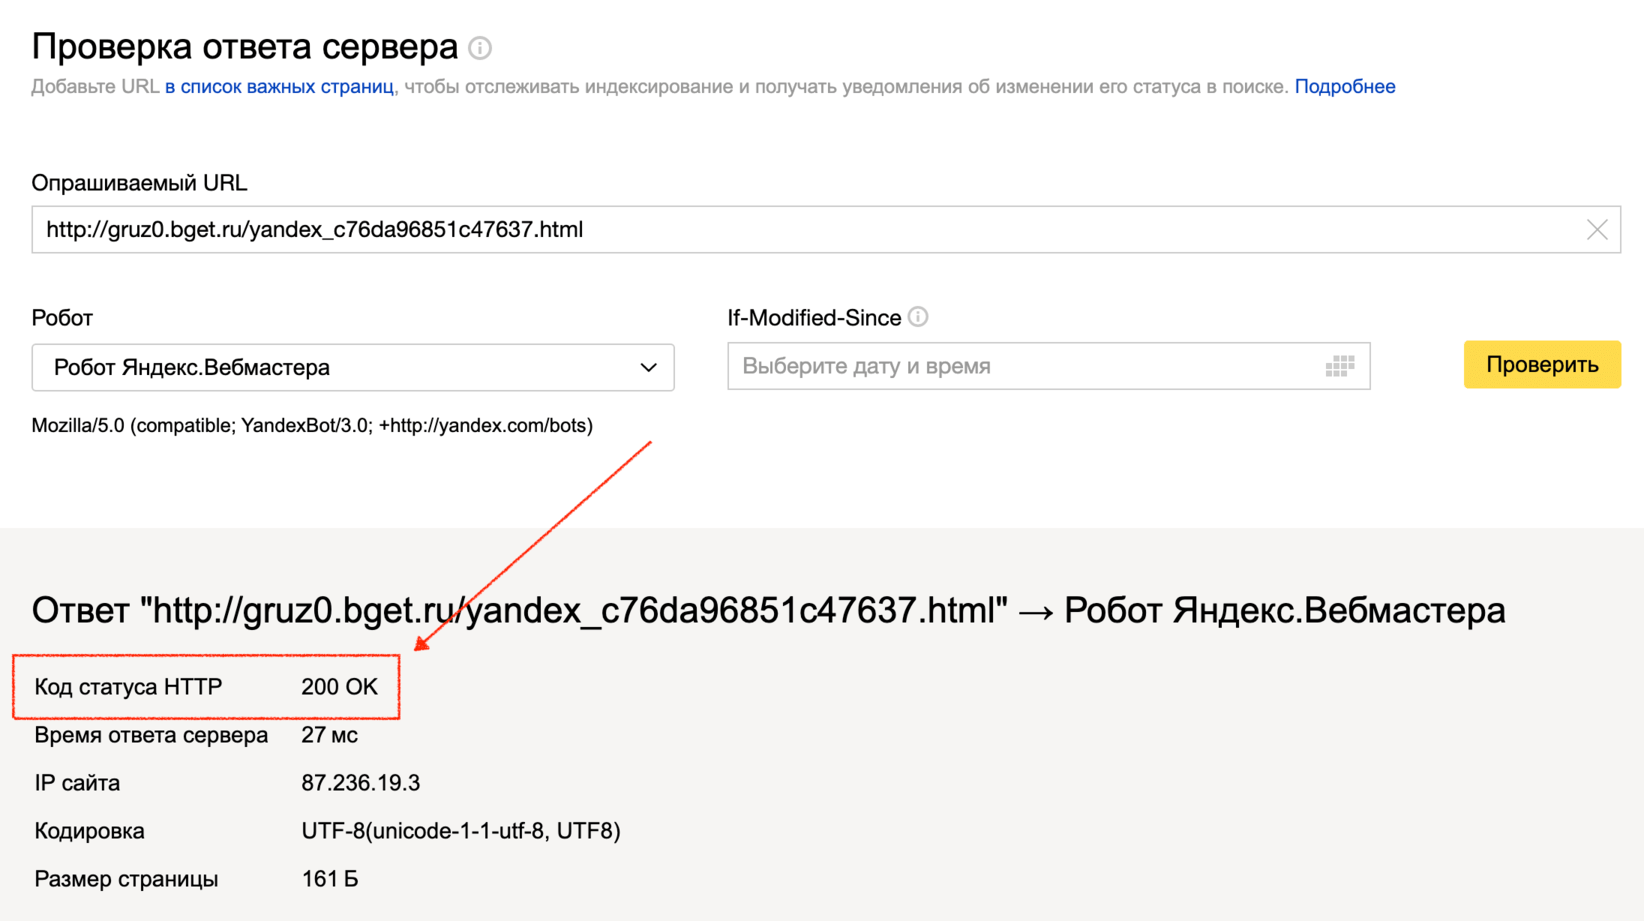 Яндекс вебмастер: что это такое, для чего он нужен, как его настроить и работать